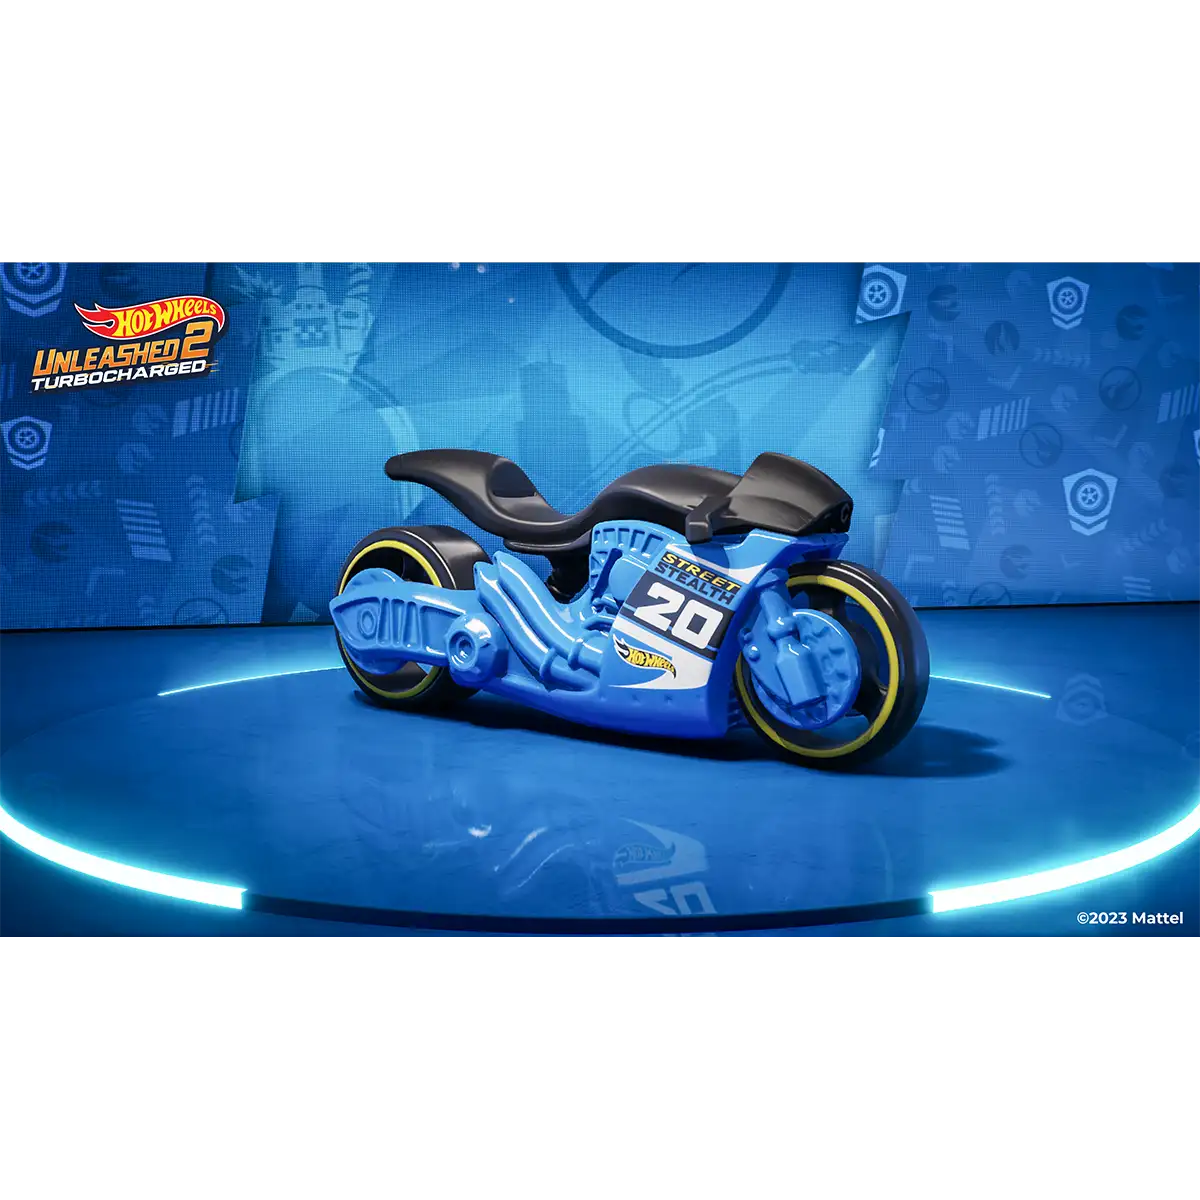 Hot Wheels Unleashed™ 2 Turbocharged (PS5) Image 5